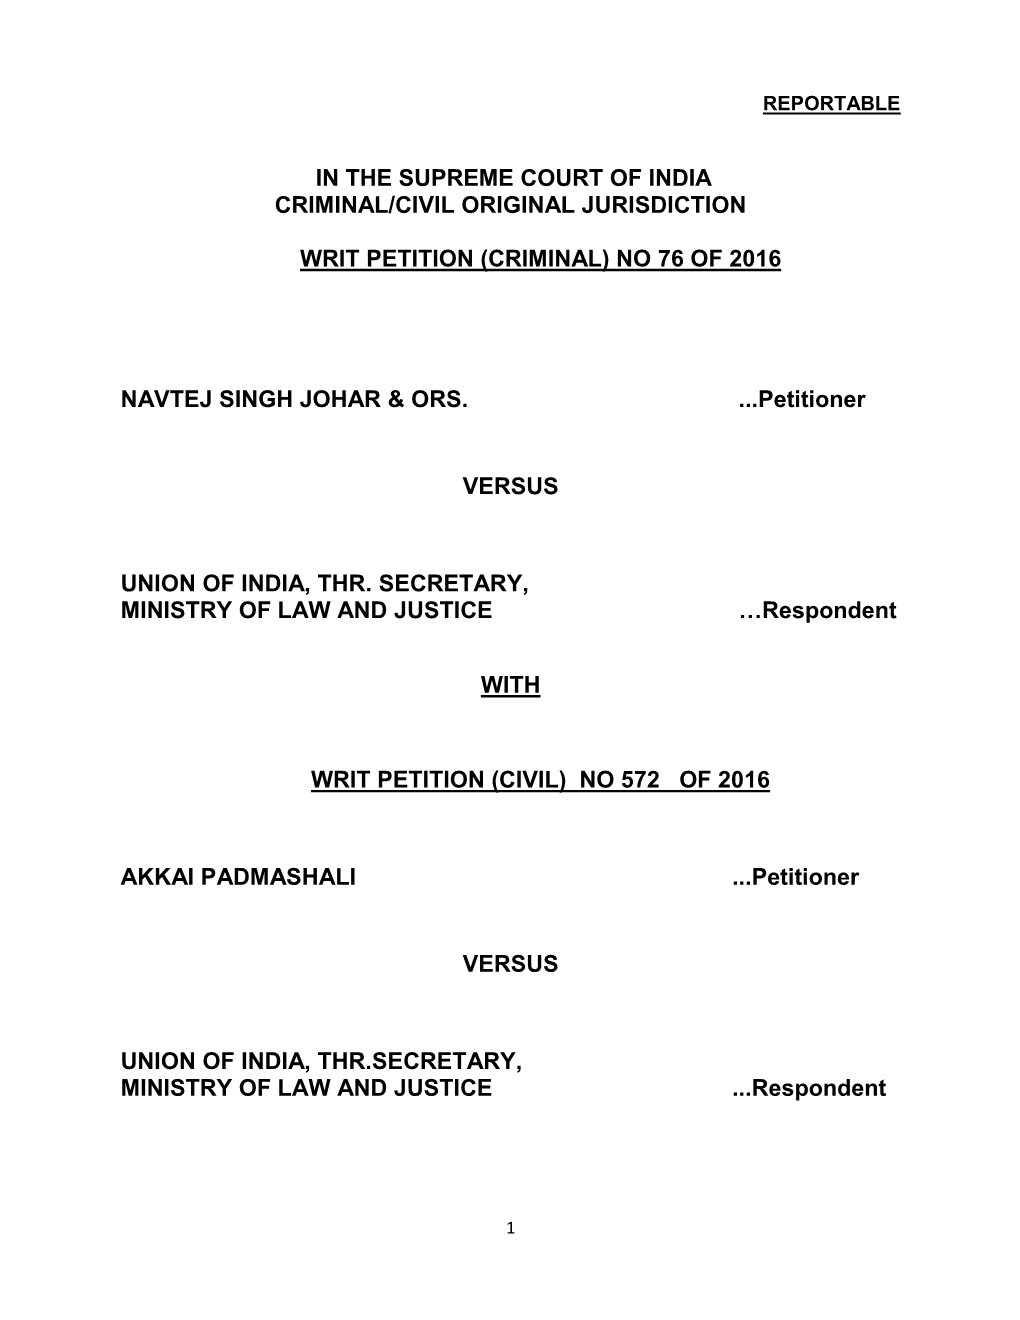 In the Supreme Court of India Criminal/Civil Original Jurisdiction